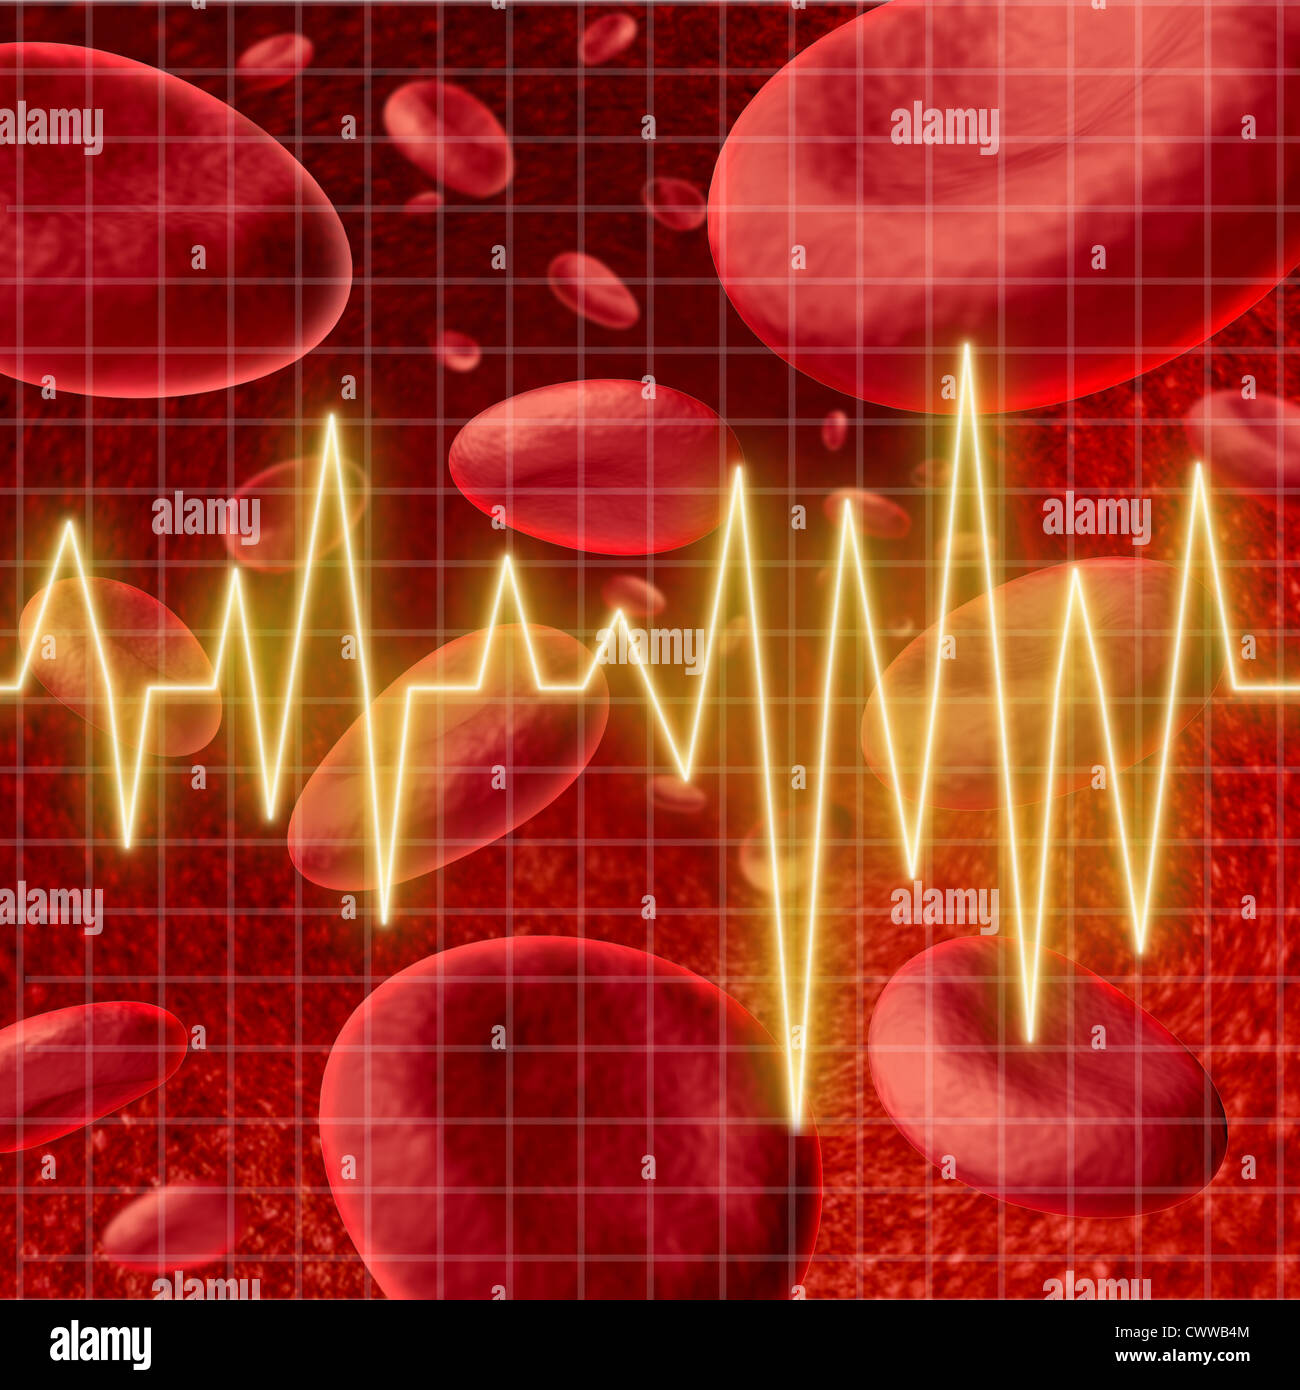 Blutzellen mit einem ekg Herz Monitor-Symbol in einem Diagramm Raster stellvertretend für das Konzept der gesunden menschlichen Arterie Zirkulation und koronare Gesundheitsversorgung in Bezug auf Schlaganfälle. Stockfoto